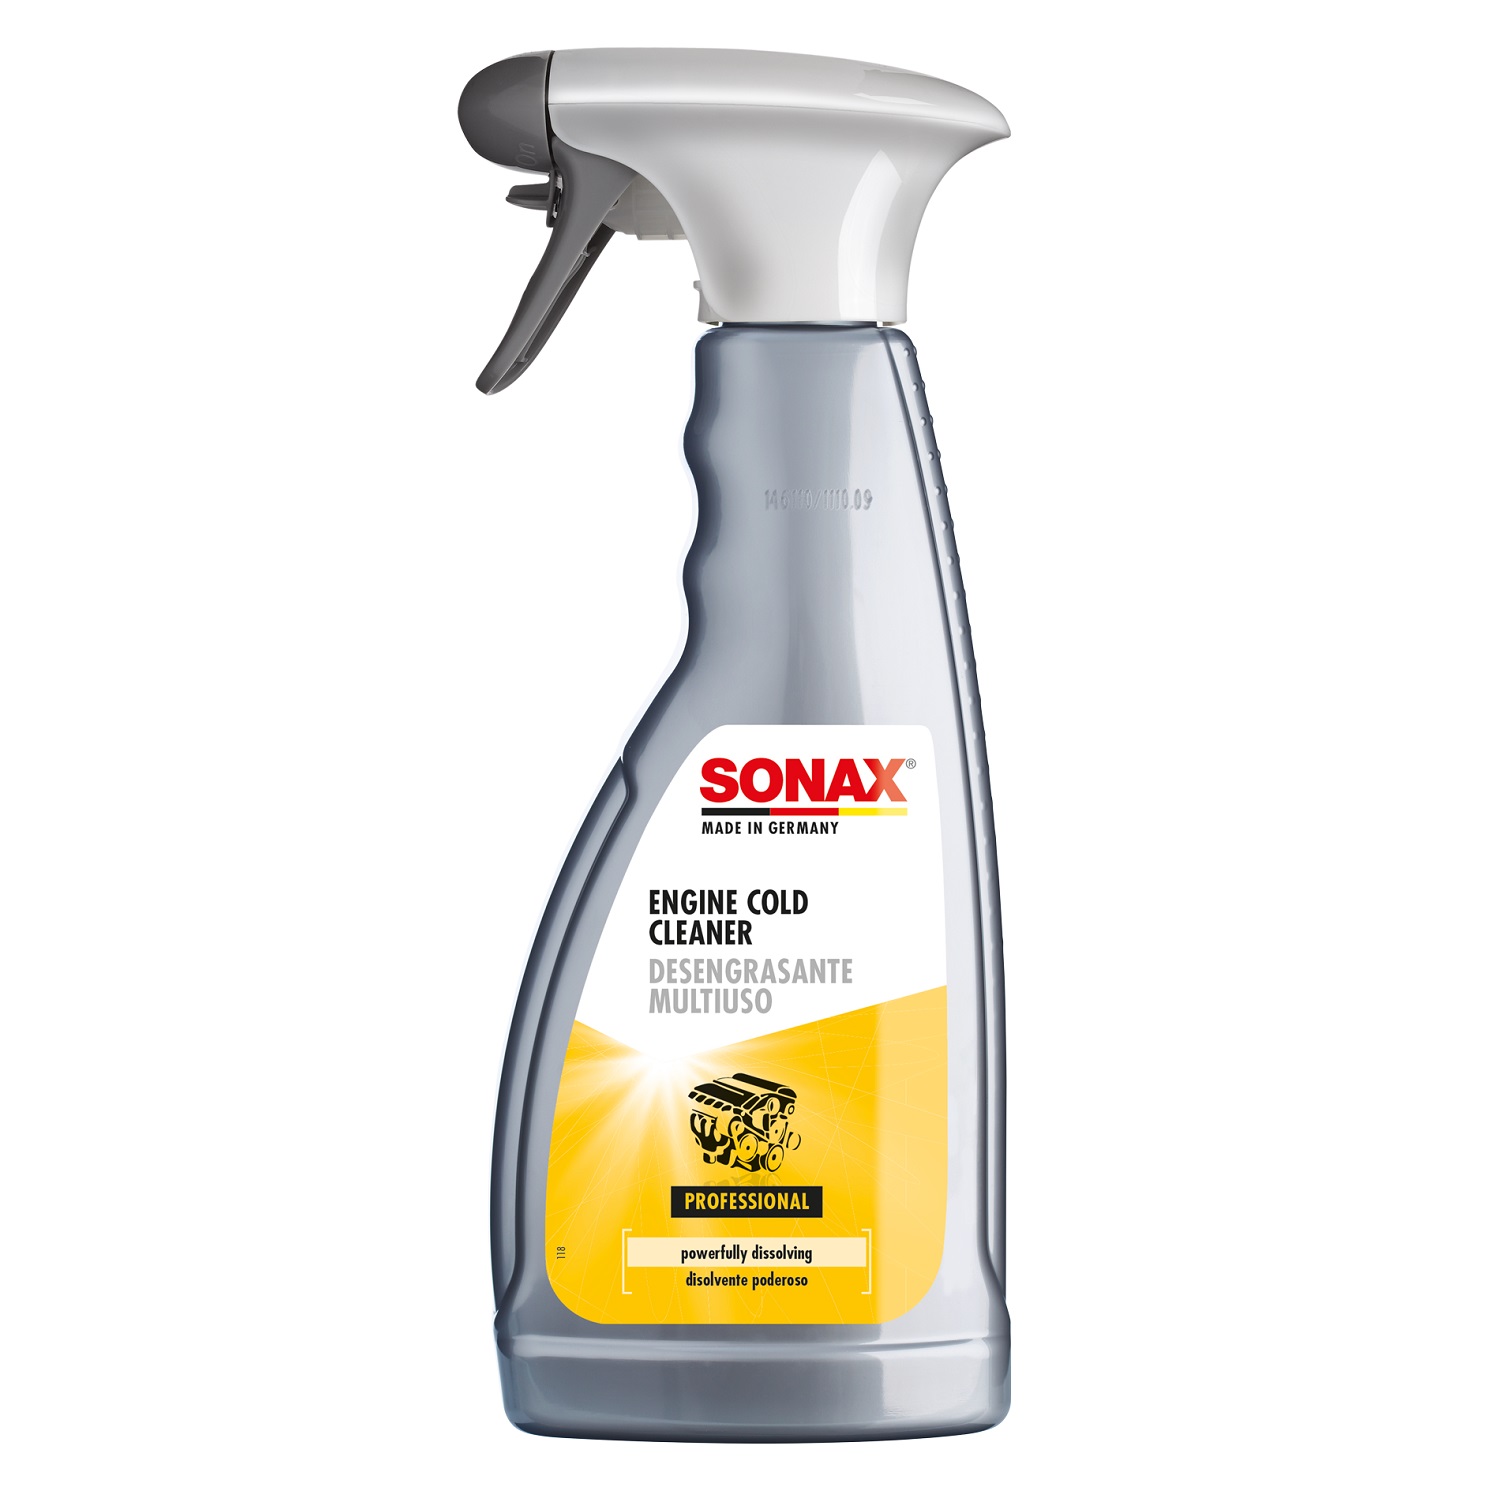 Chai xịt làm sạch bảo vệ khoang máy động cơ ô tô chuyên dụng Sonax 543200 500ml - Chống oxy hóa và ăn mòn, chống tĩnh điện, dùng được nhiều bề mặt, không để lại vết ố